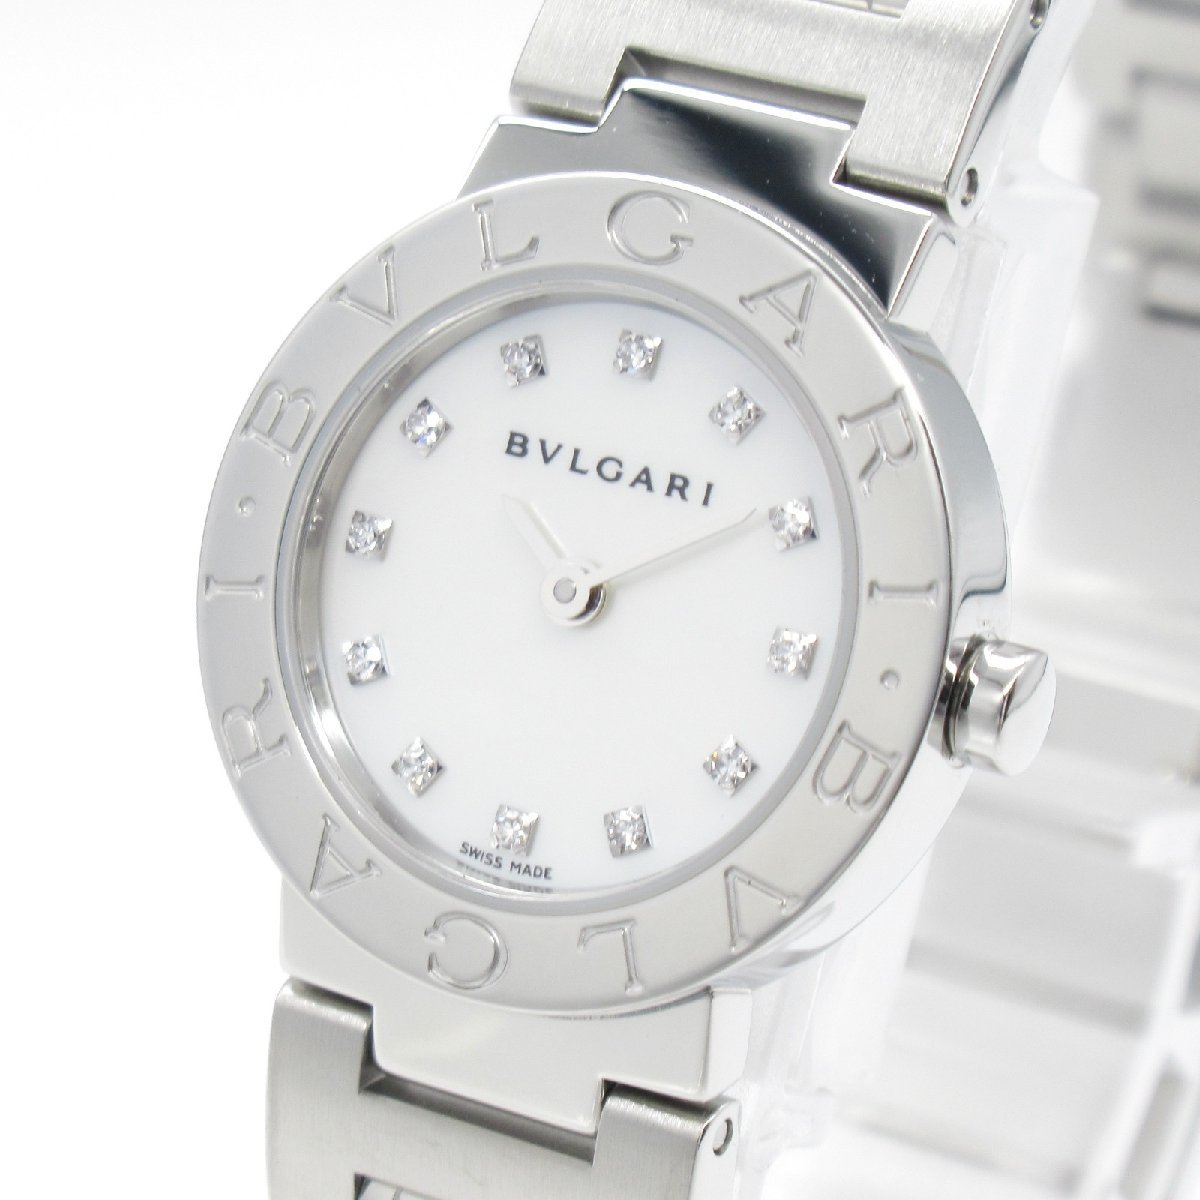 BVLGARI ブルガリ 腕時計 ブルガリ ブルガリ 10Pダイヤ 腕時計 ウォッチ ホワイト系 ステンレススチール ダイヤモンド 中古 レディース_画像3